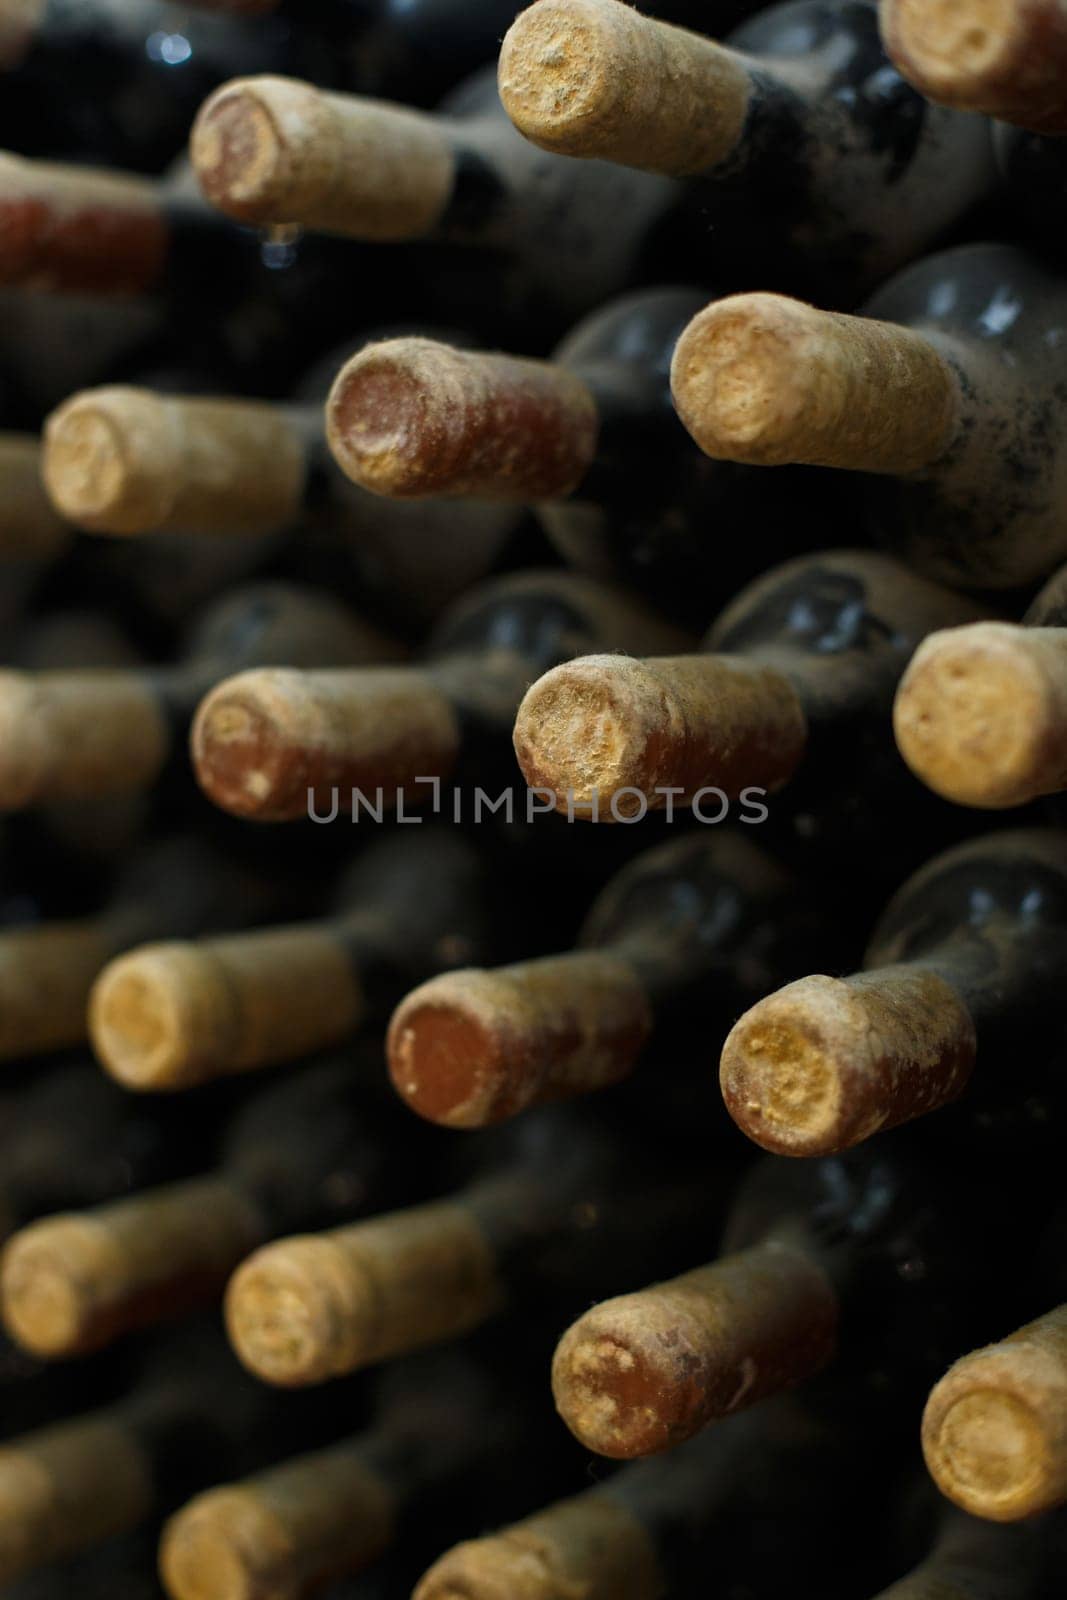 Dusty wine bottles aging in a cellar